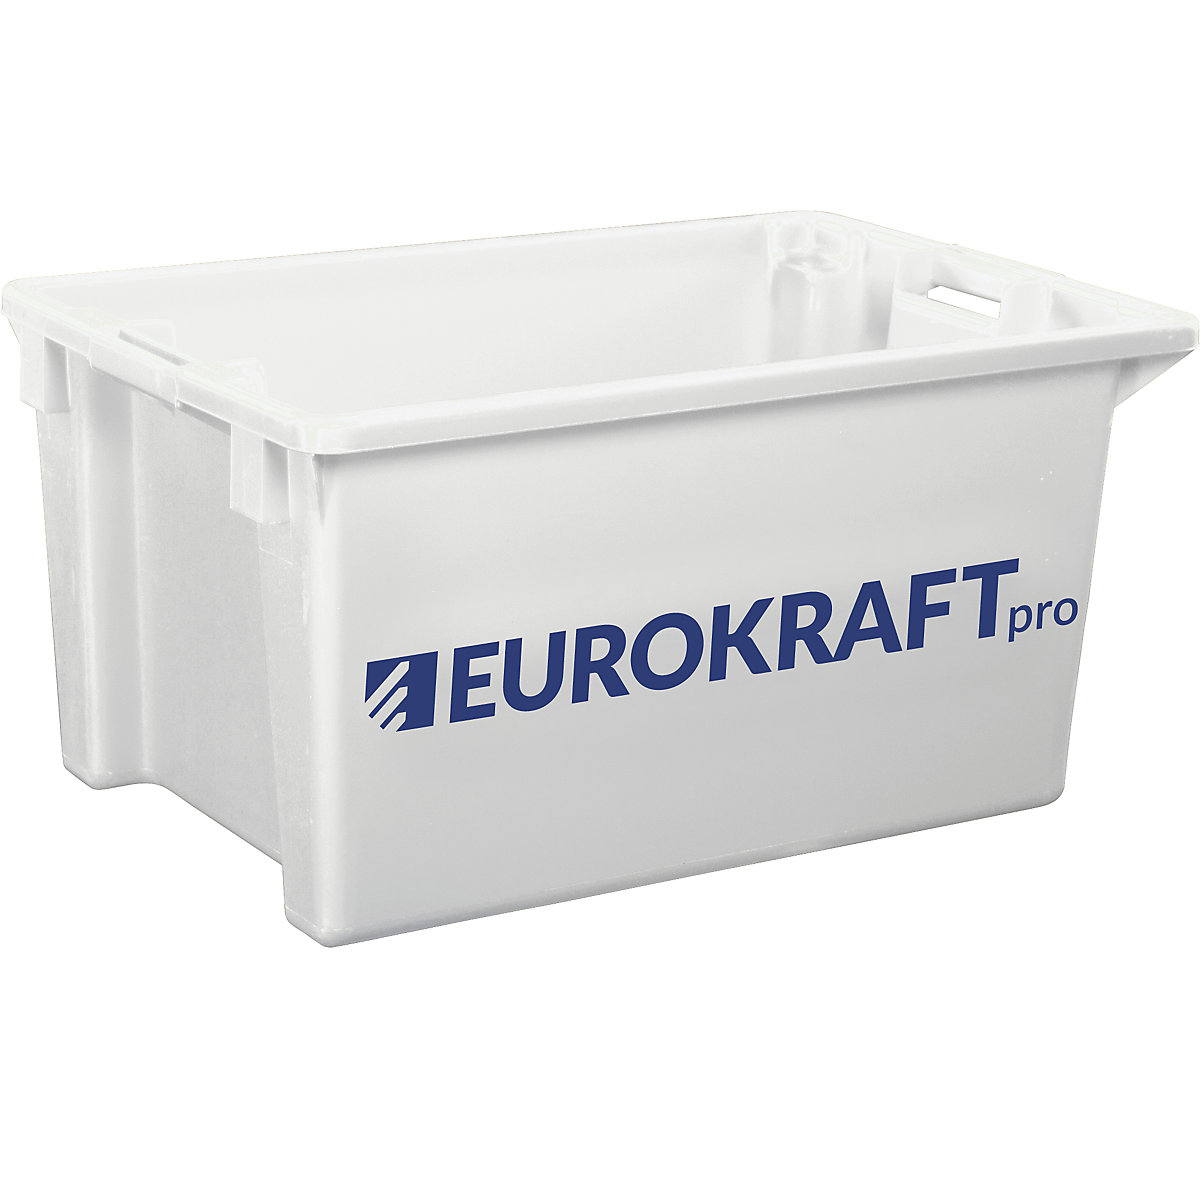 EUROKRAFTpro Drehstapelbehälter aus lebensmittelechtem Polypropylen, Inhalt 70 Liter, VE 2 Stk, Wände und Boden geschlossen, natur